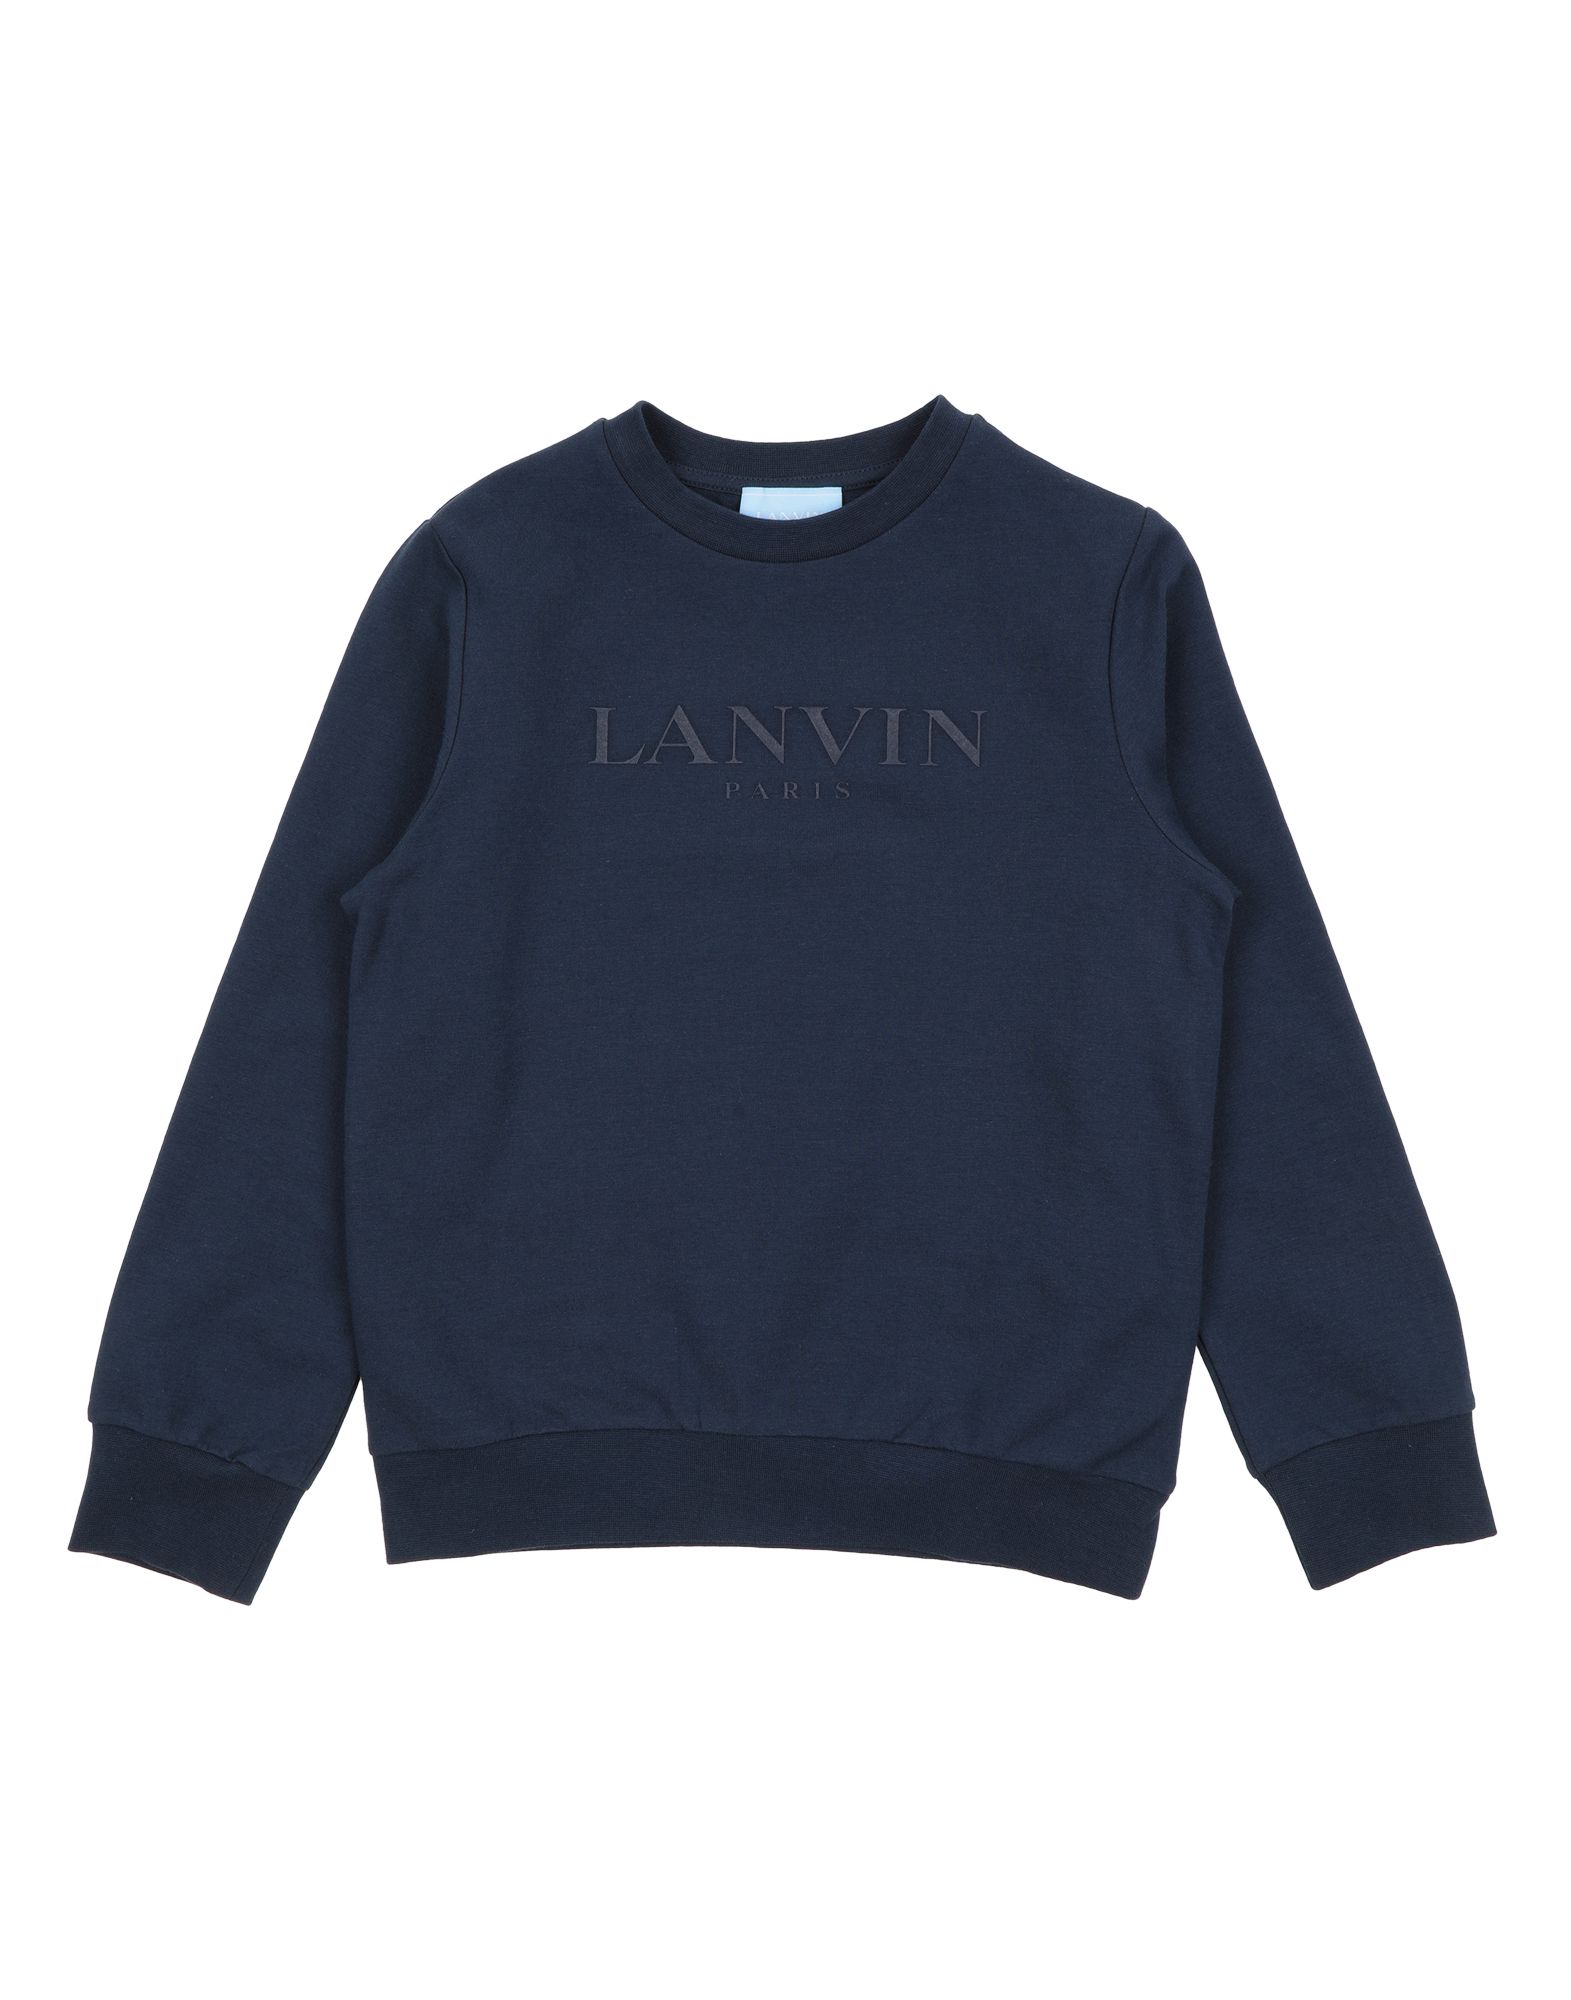 Lanvin Kids' Sweatshirts In Dark Blue